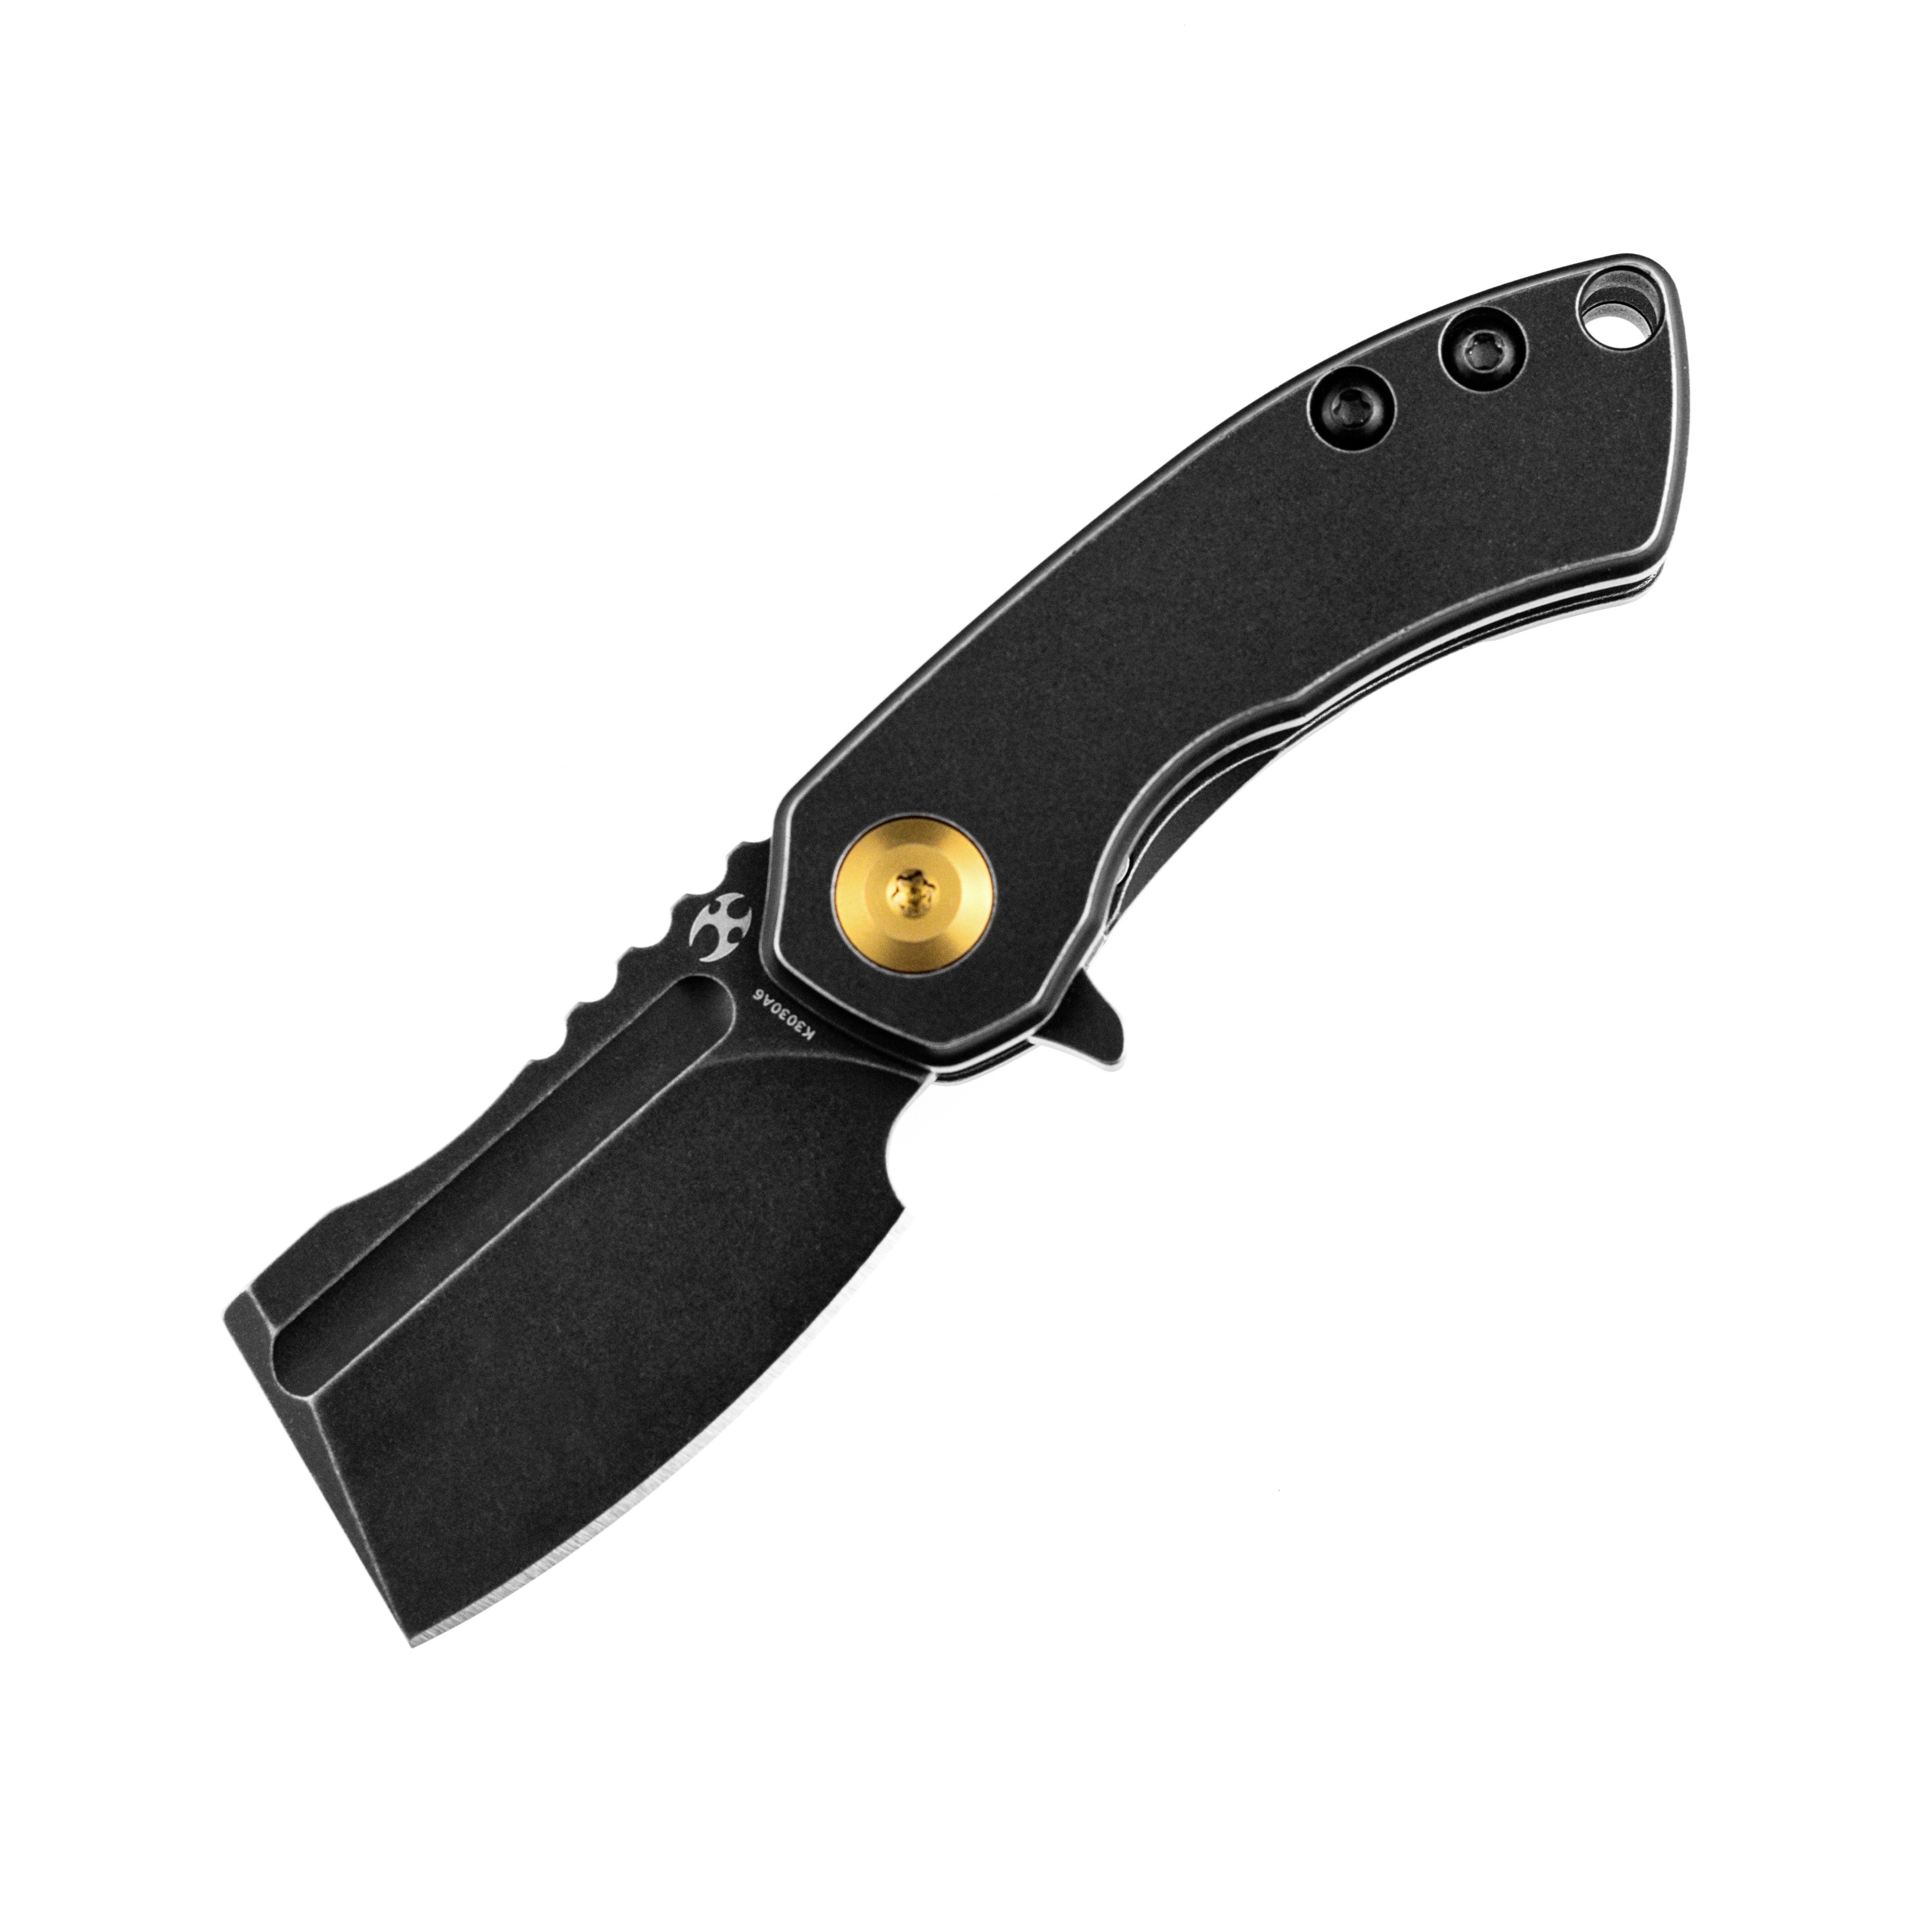 Kansept 刀具 Mini Korvid K3030A6 黑色 S35VN 刀片黑色钛手柄框架锁